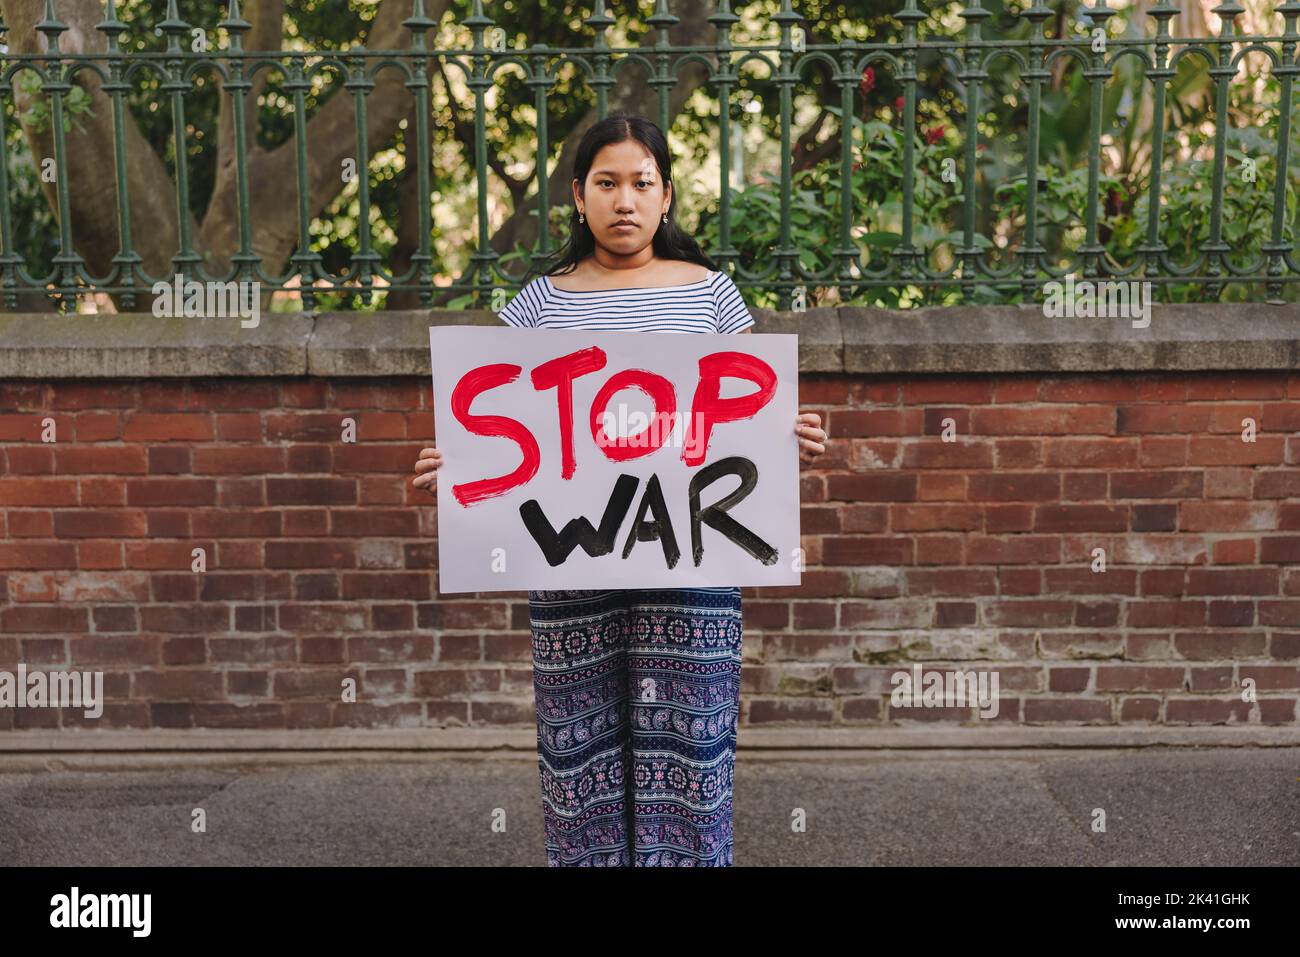 Giovane ragazza adolescente che guarda la macchina fotografica mentre tiene un manifesto anti-guerra. Giovane attivista per la pace che protesta contro la guerra e la violenza. Foto Stock